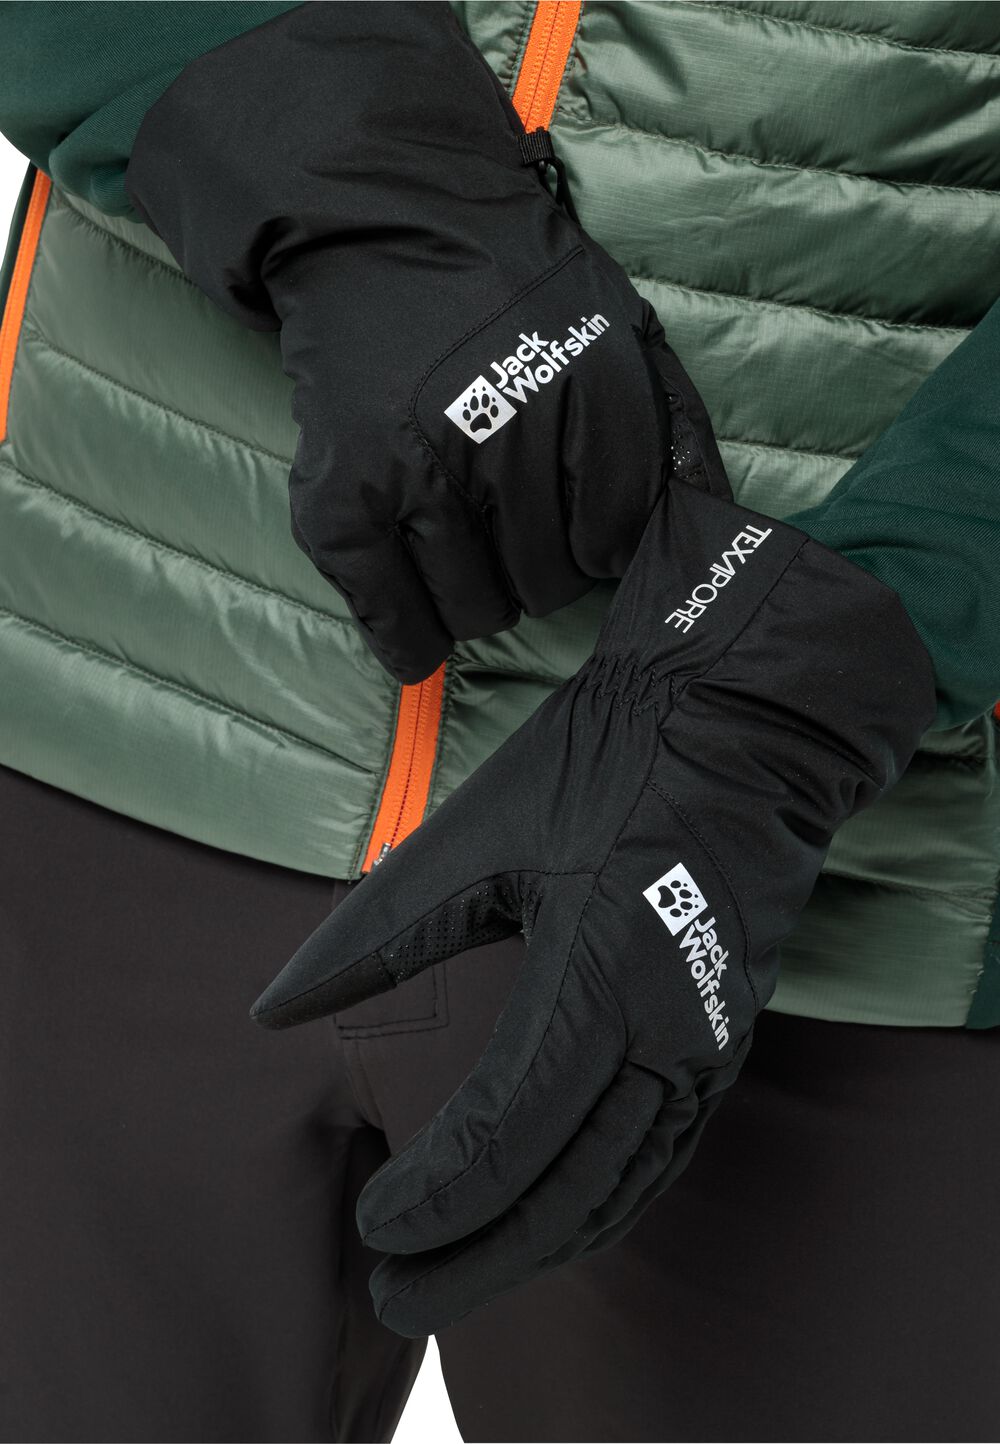 Photos - Winter Gloves & Mittens Jack Wolfskin Waterproof gloves Winter Basic Glove XL black black 19115216 